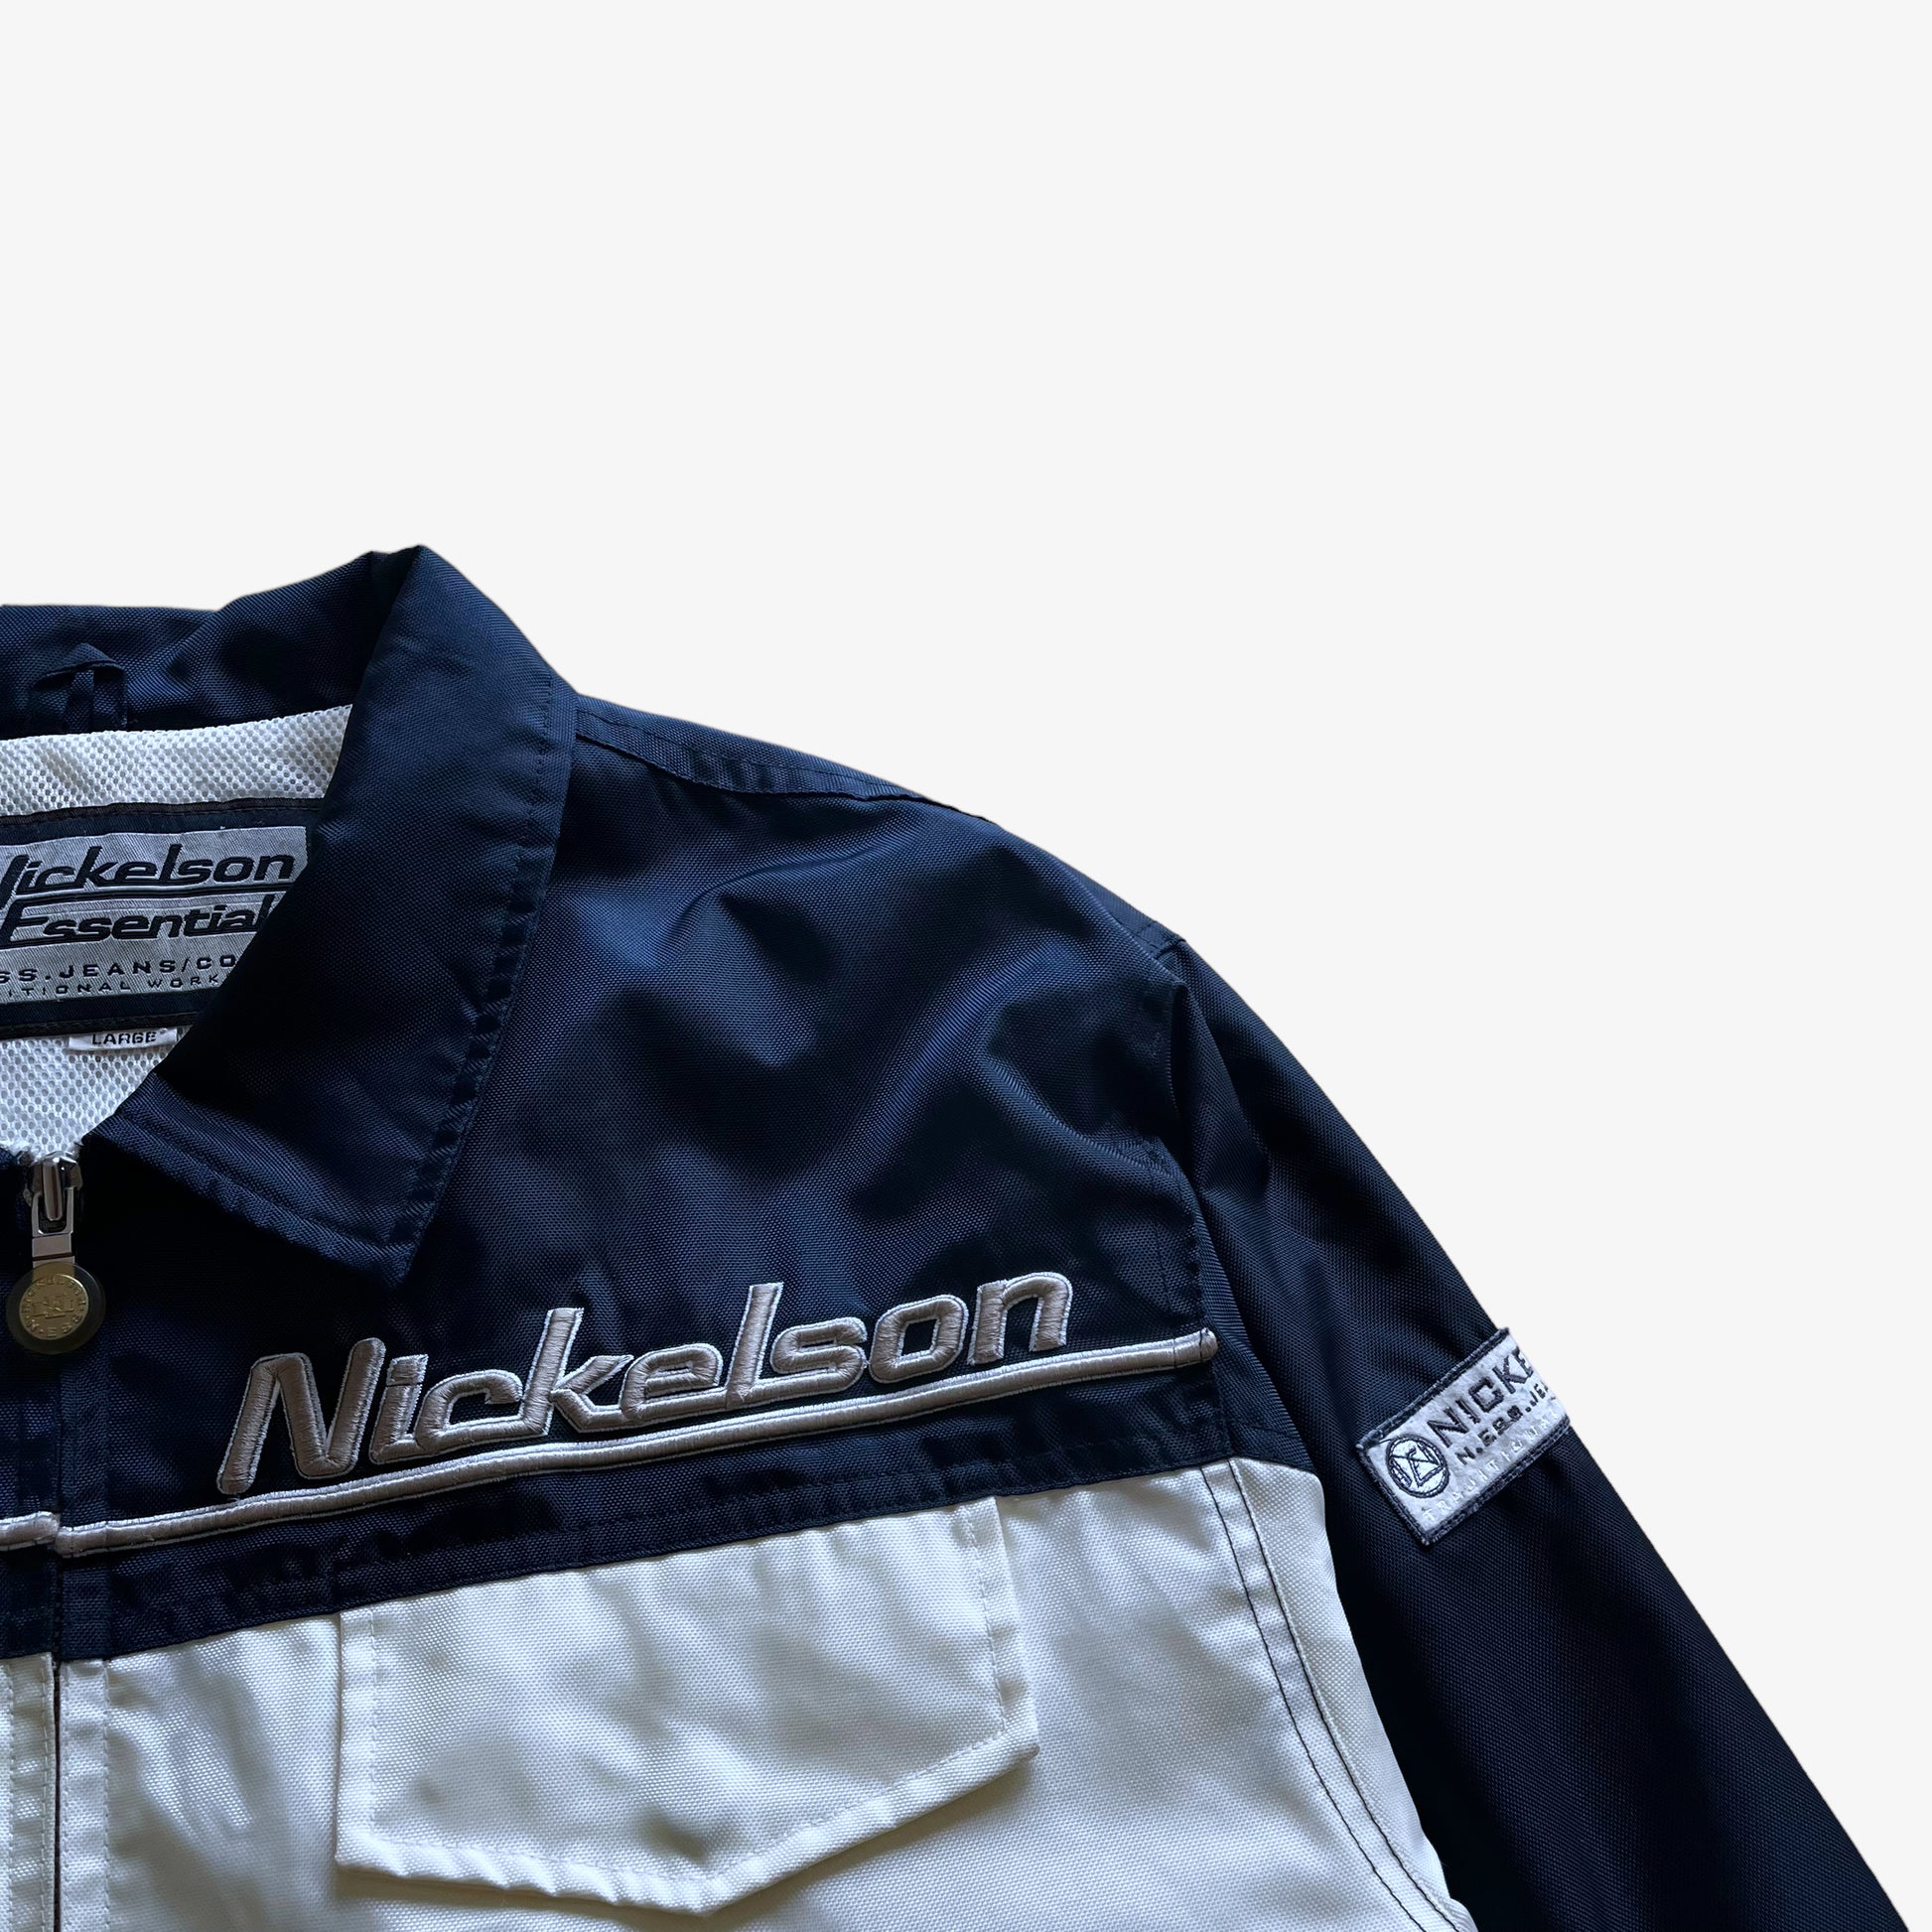 Vintage 90s Mens Nickelson Essential Workwear Jacket Logo - Casspios Dream